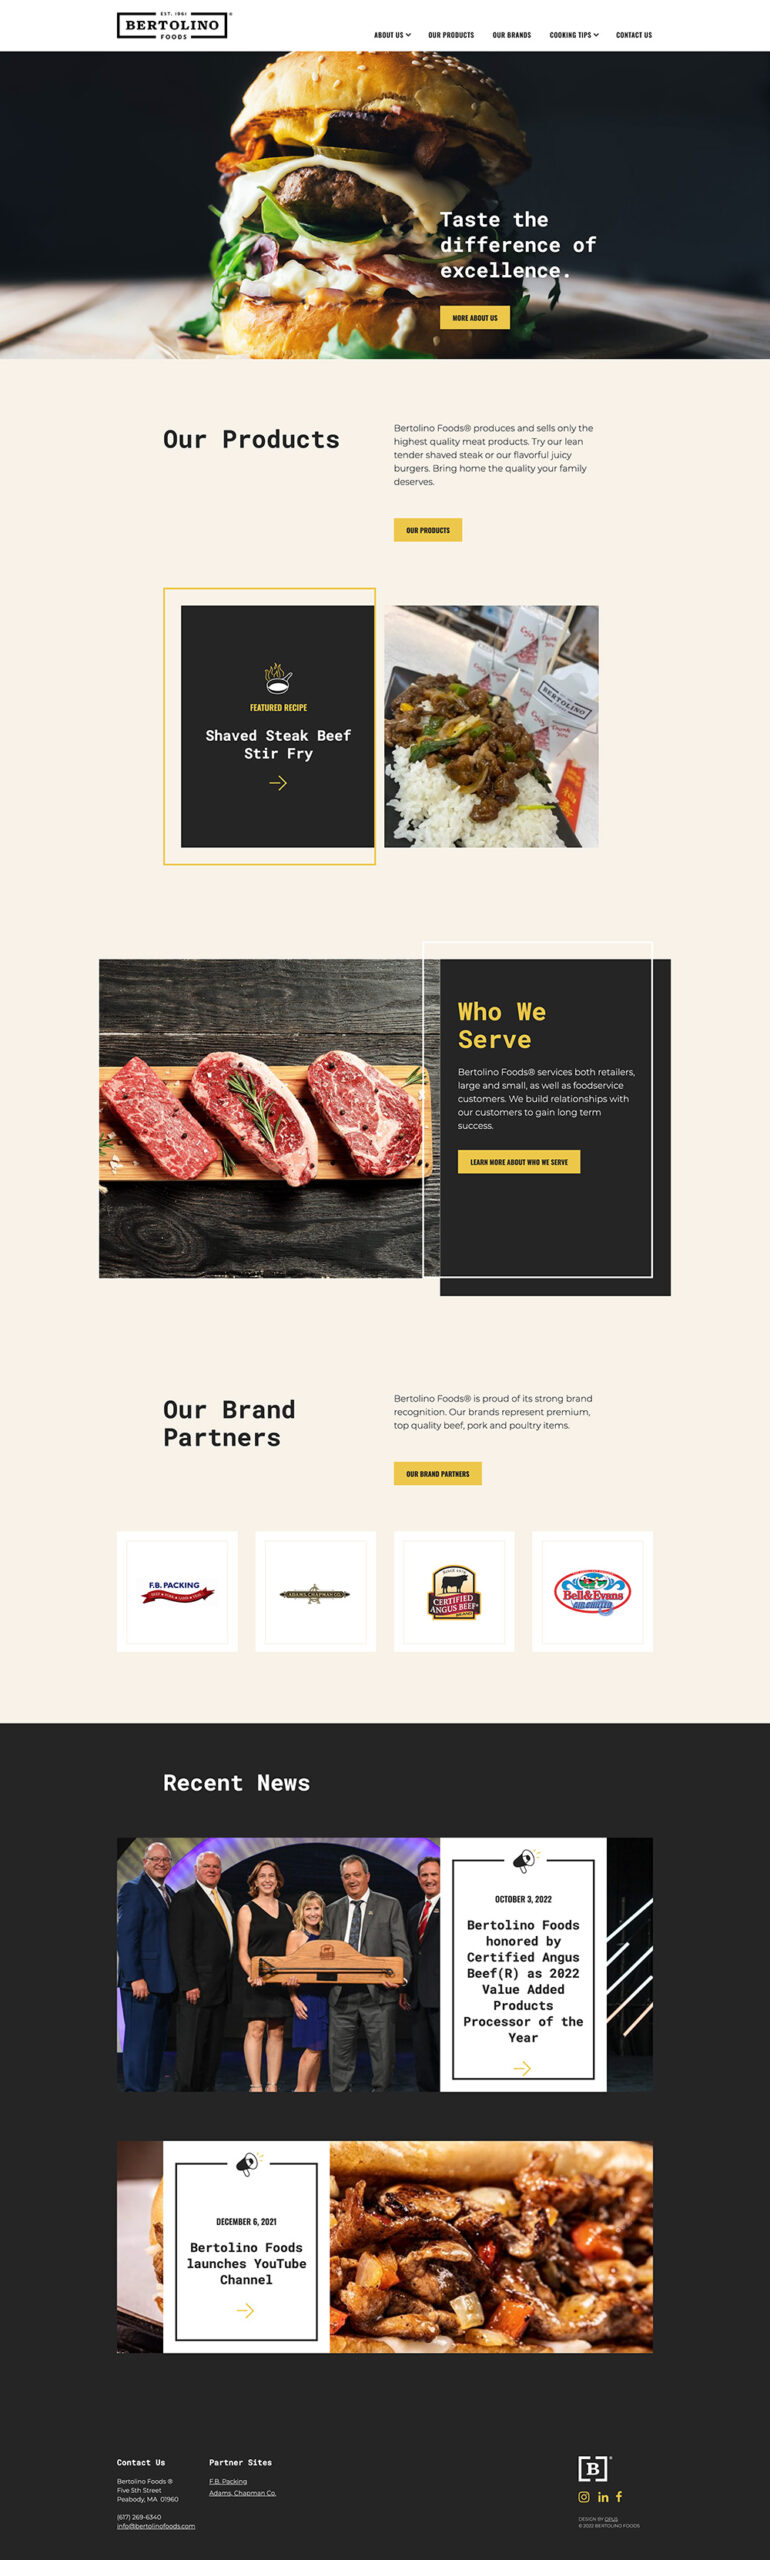 Bertolino Foods homepage design